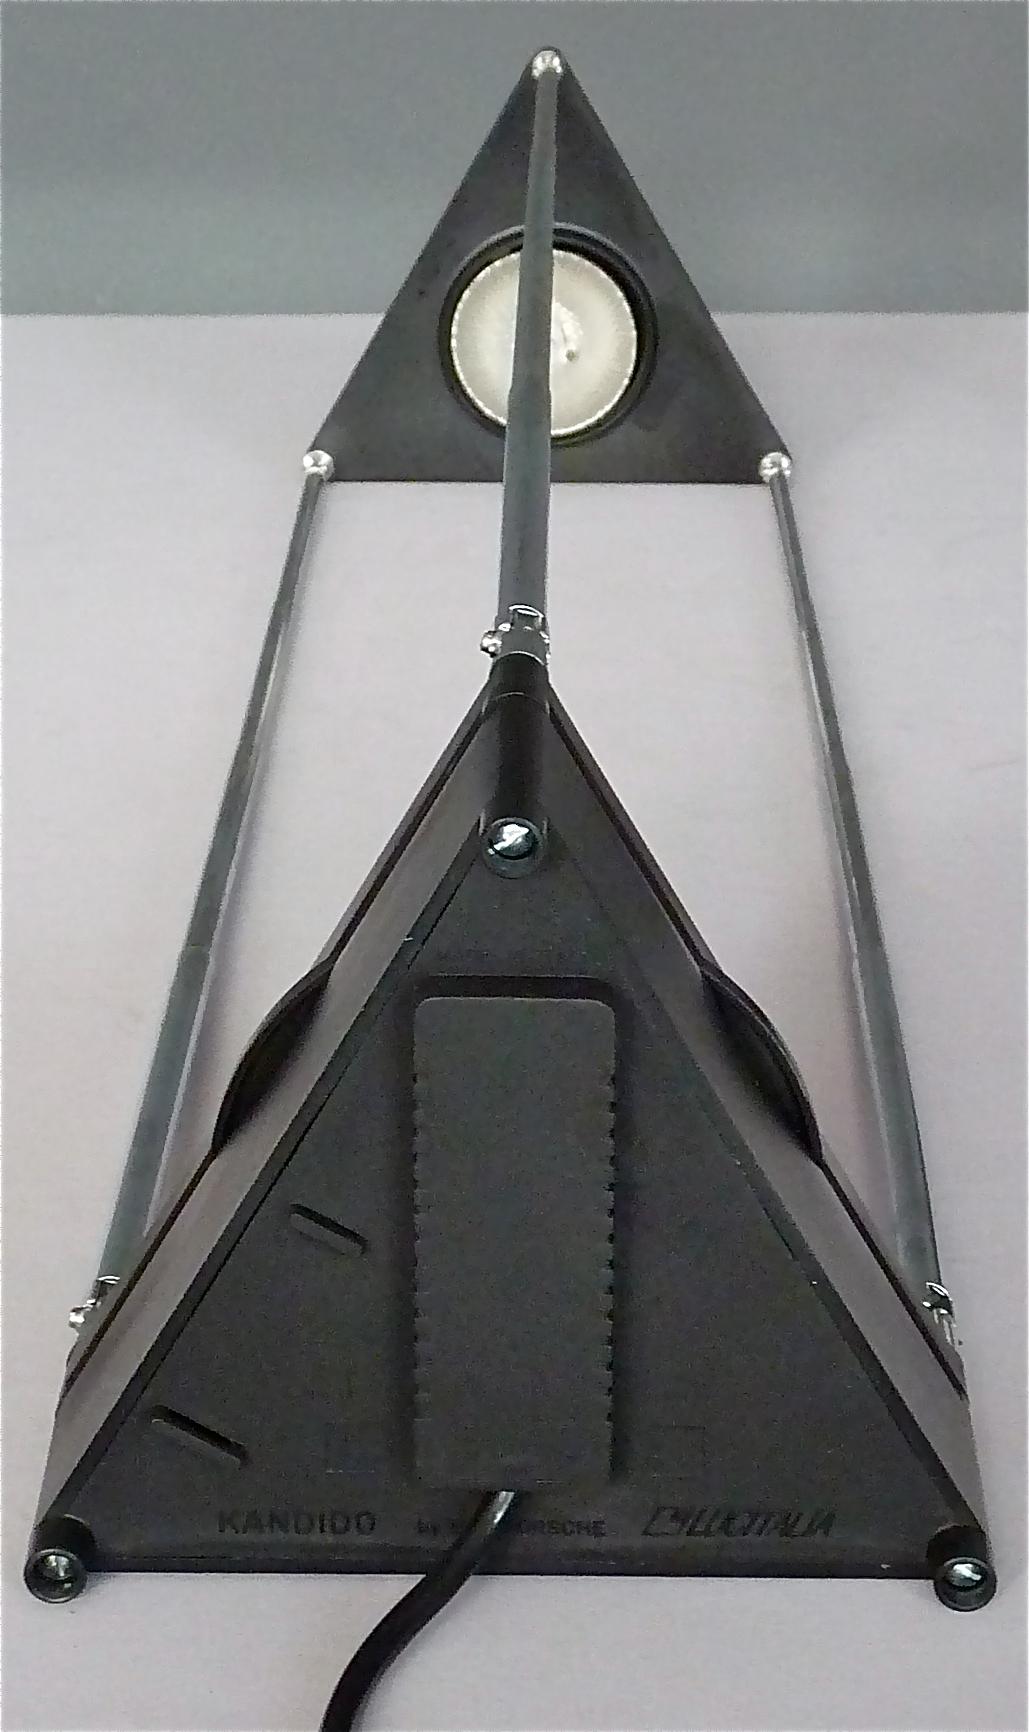 Pair Sculptural Table Lamps by F.A. Porsche Lucitalia Chrome Metal Black Plastic 1